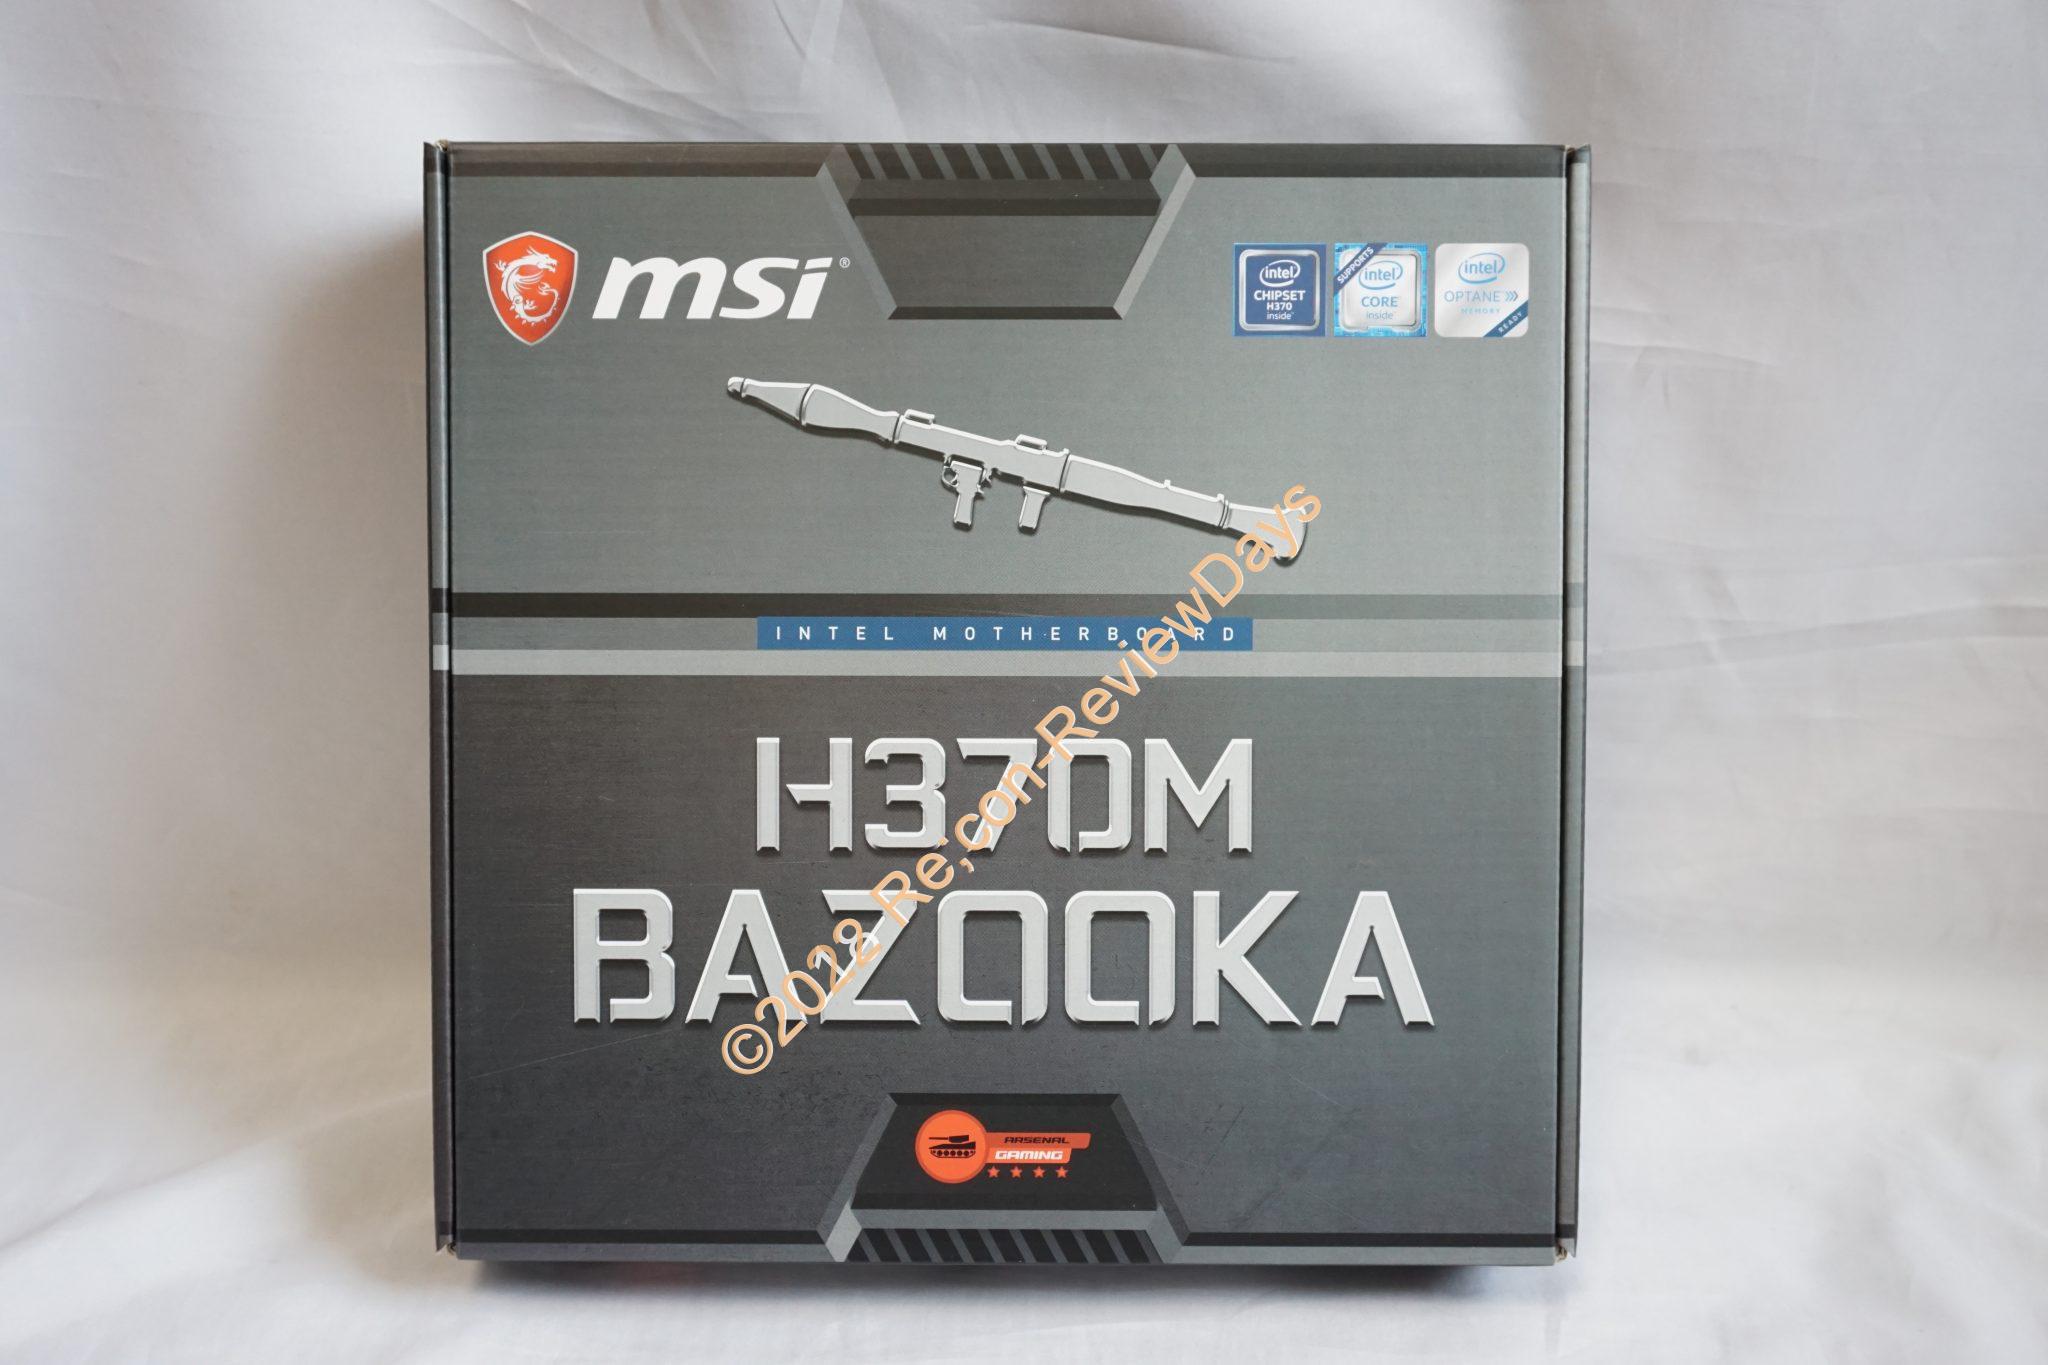 MSI Intel H370を搭載するMicro-ATXマザーボード「H370M BAZOOKA」の外観をチェックする #MSI #Intel #H370 #自作PC #Motherboard